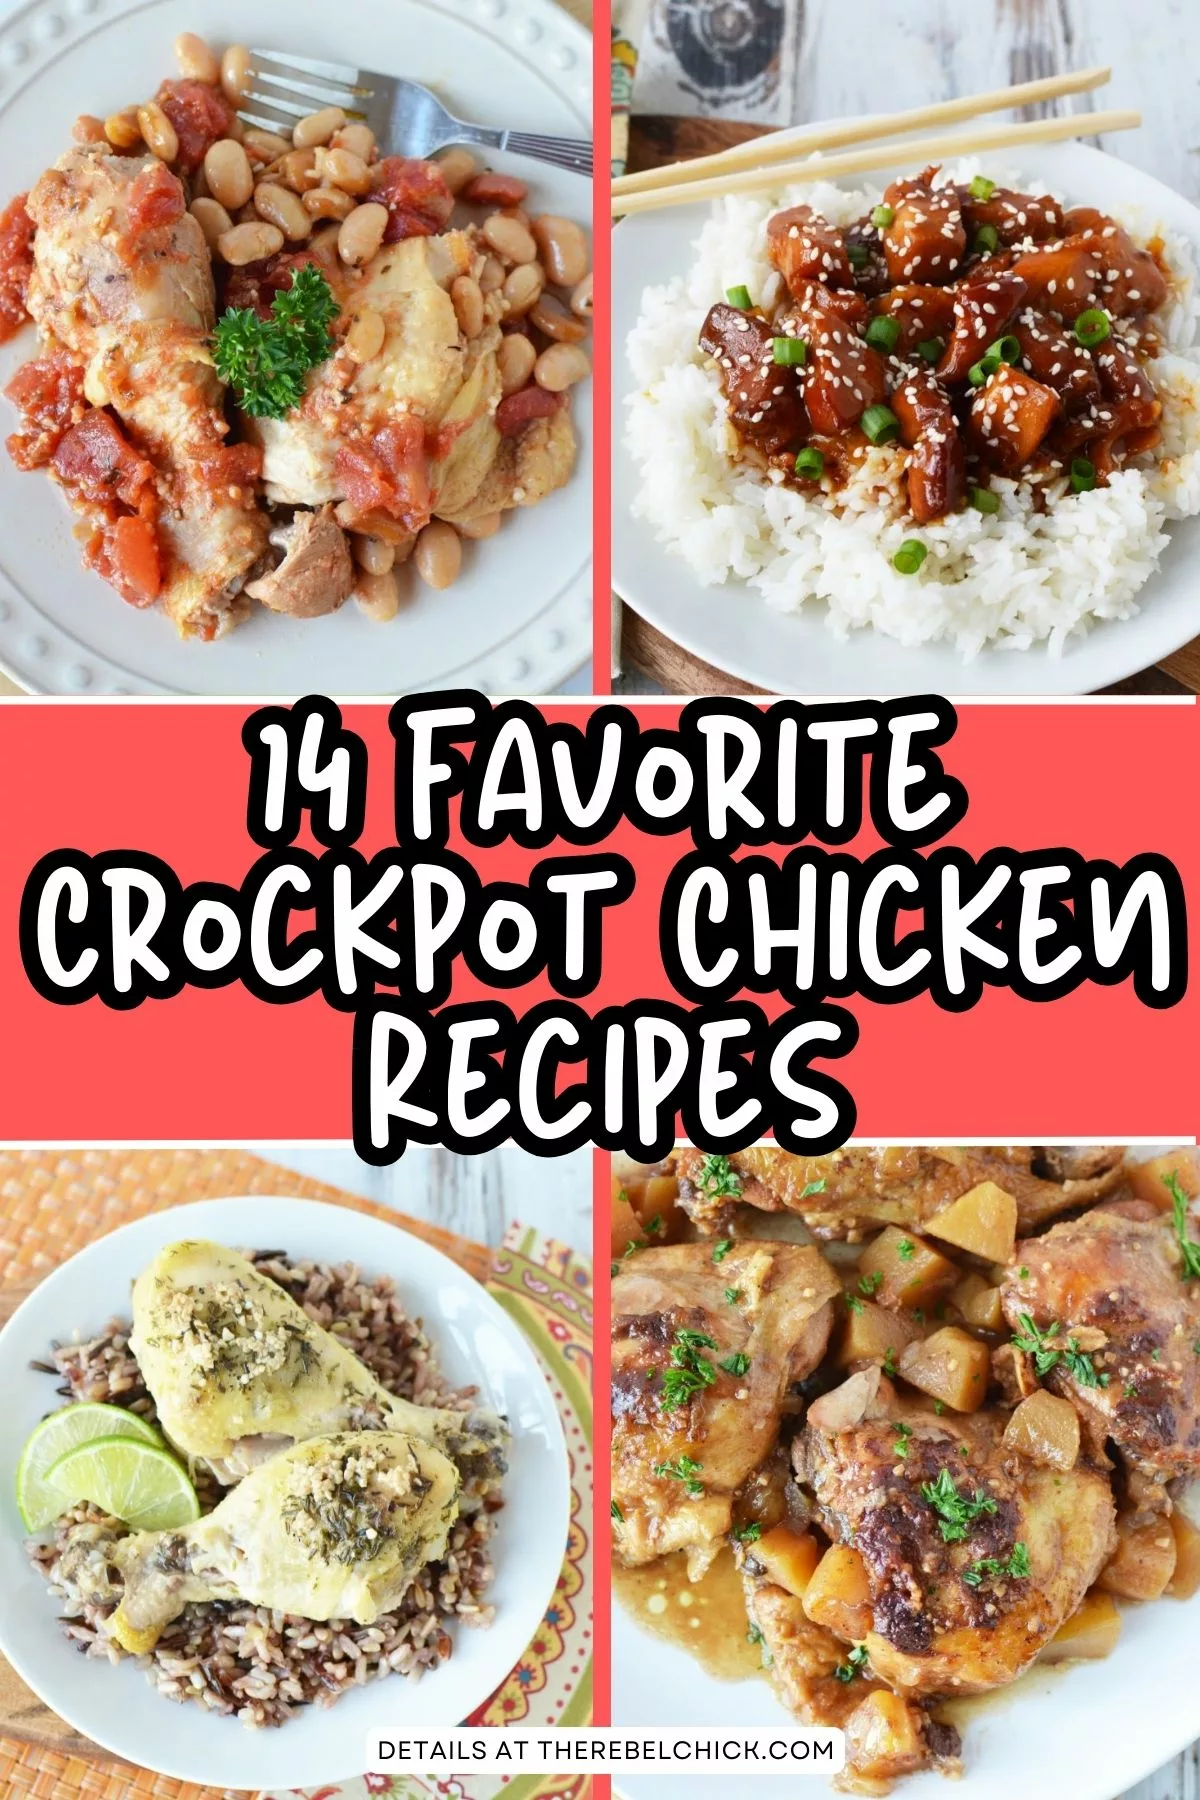 14 Crockpot Chicken Recipes